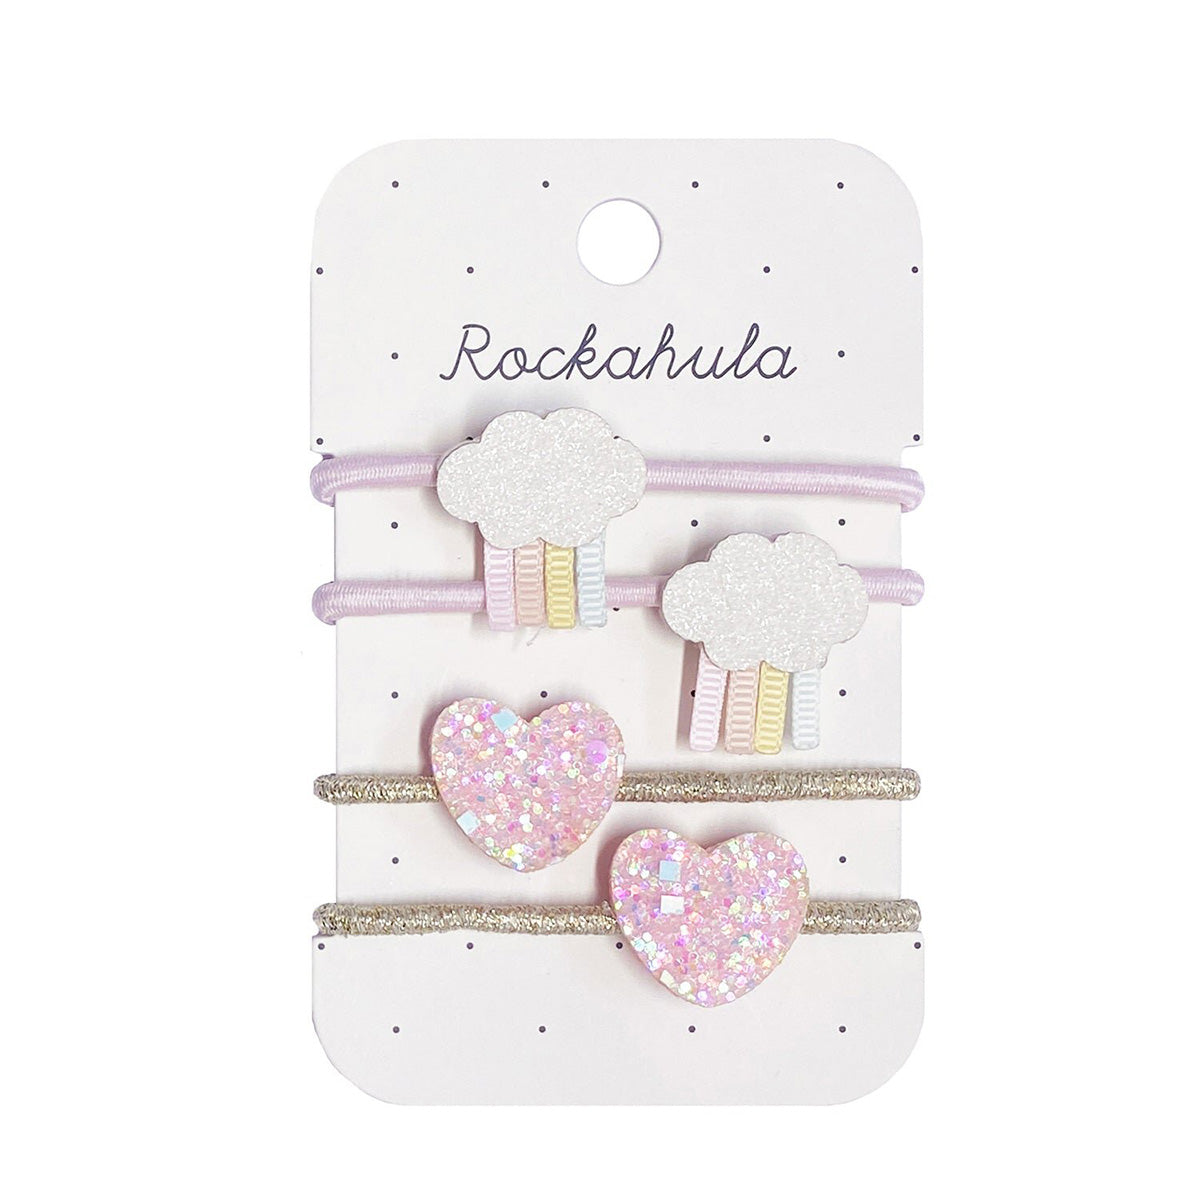 Cuteness overload met Rockahula’s pastel rainy cloud elastiekjes! De set bestaat uit 4 elastieken in verschillende kleuren en versieringen: glitter wolkjes en glitter hartjes. Handig en hip! VanZus